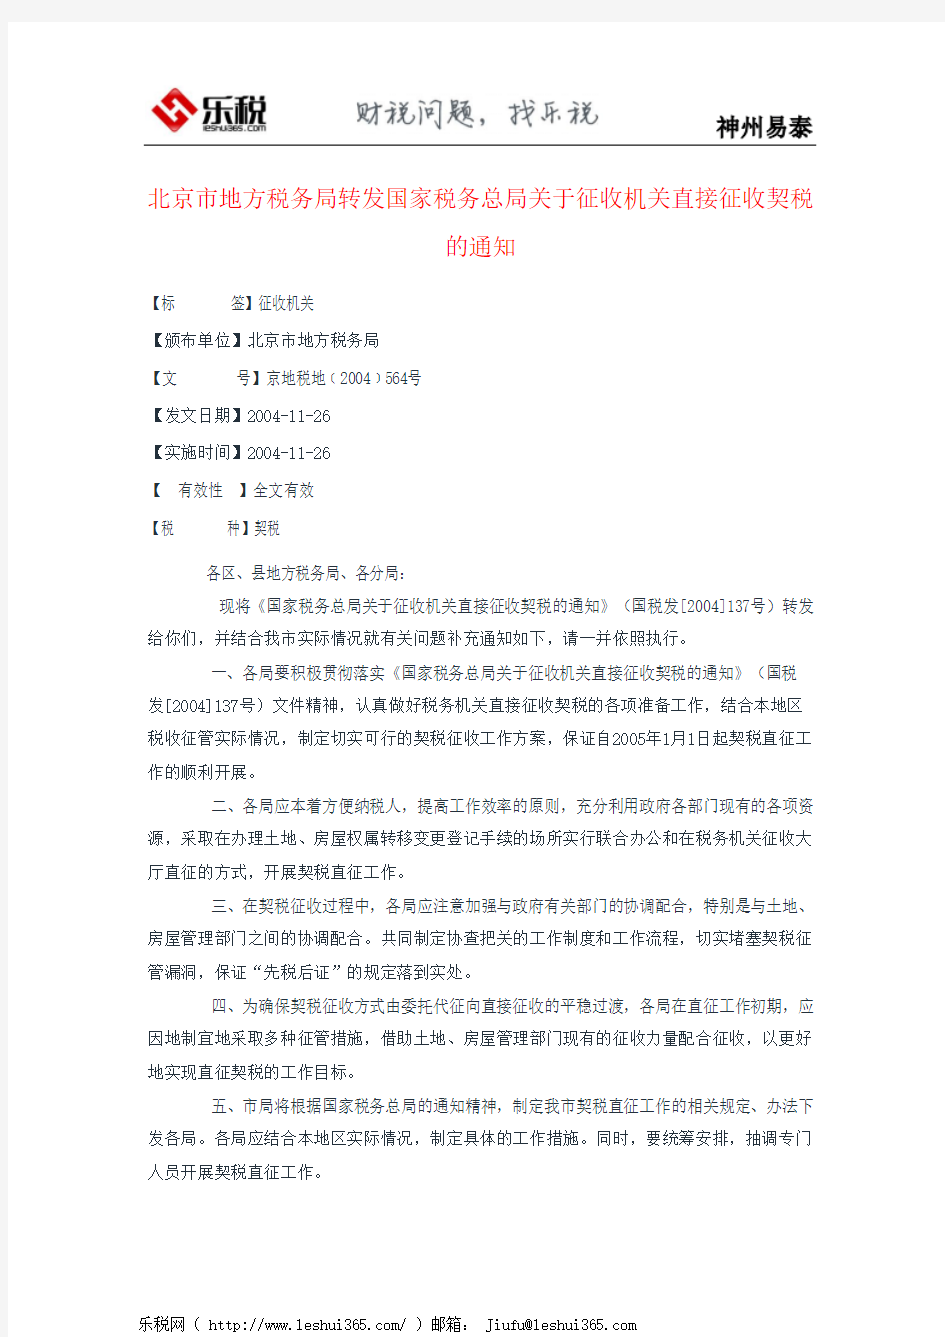 北京市地方税务局转发国家税务总局关于征收机关直接征收契税的通知